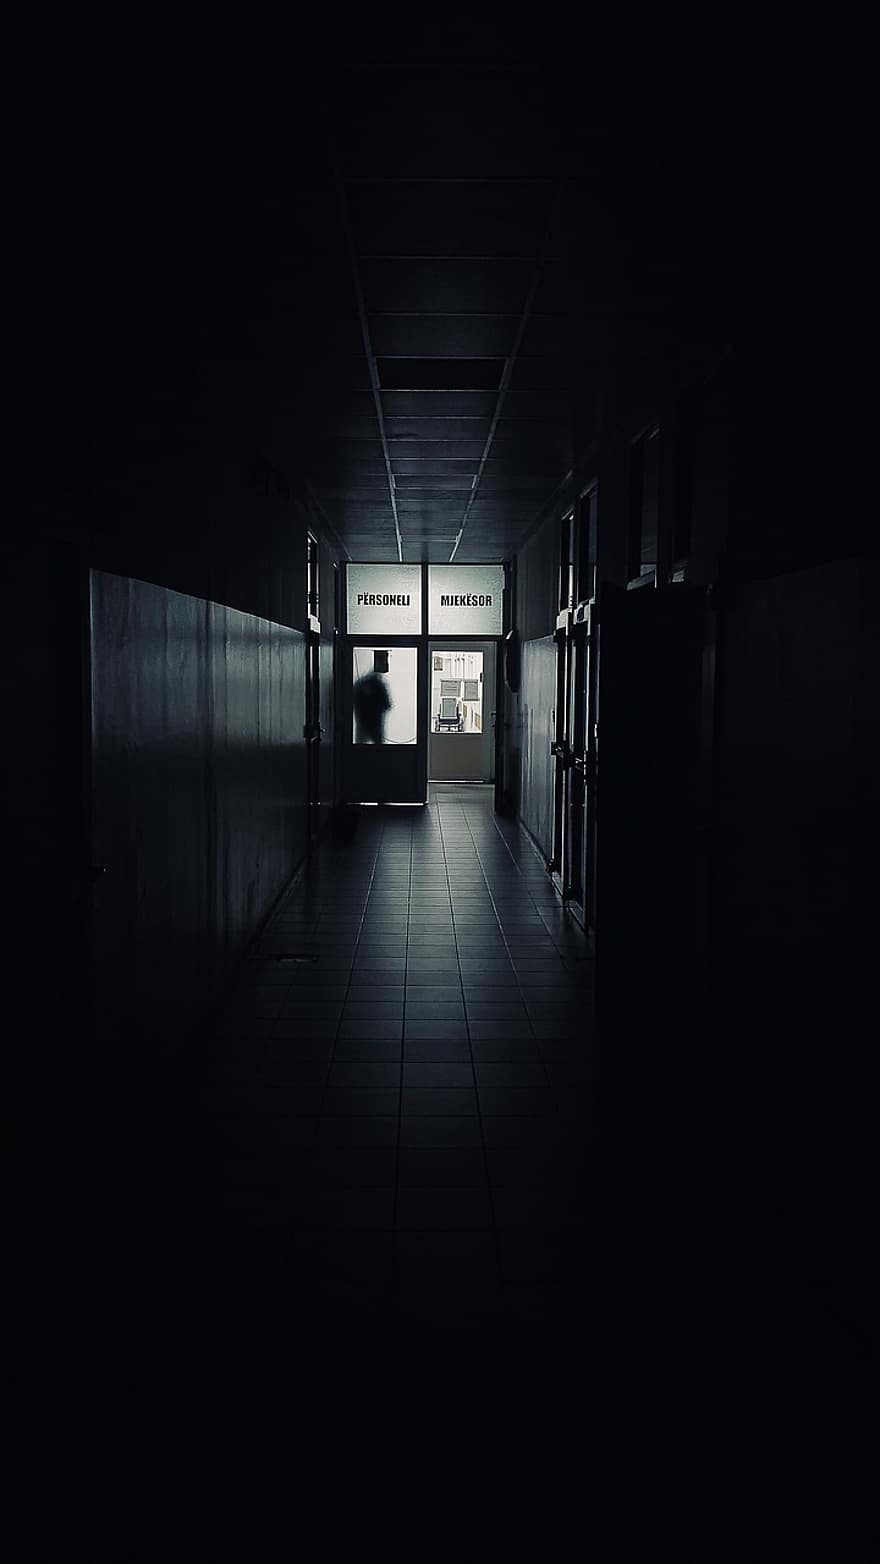 szpital, korytarz, przejście, ciemność, straszny